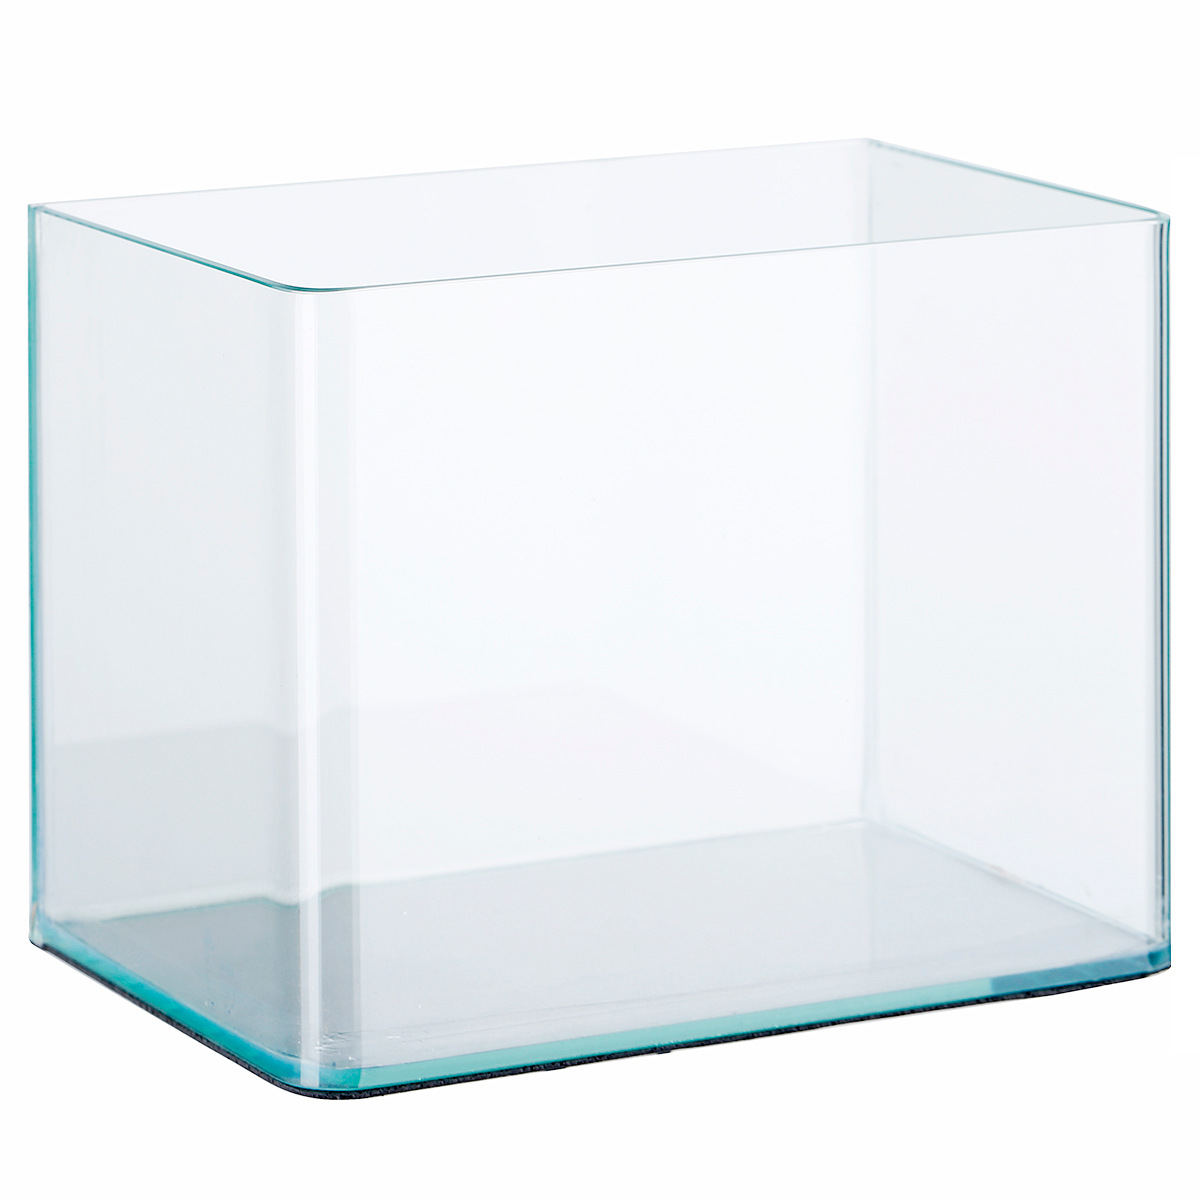 生态鱼缸水族箱 中小型透明玻璃套缸 方形迷你热弯金鱼缸厂家批发详情图2